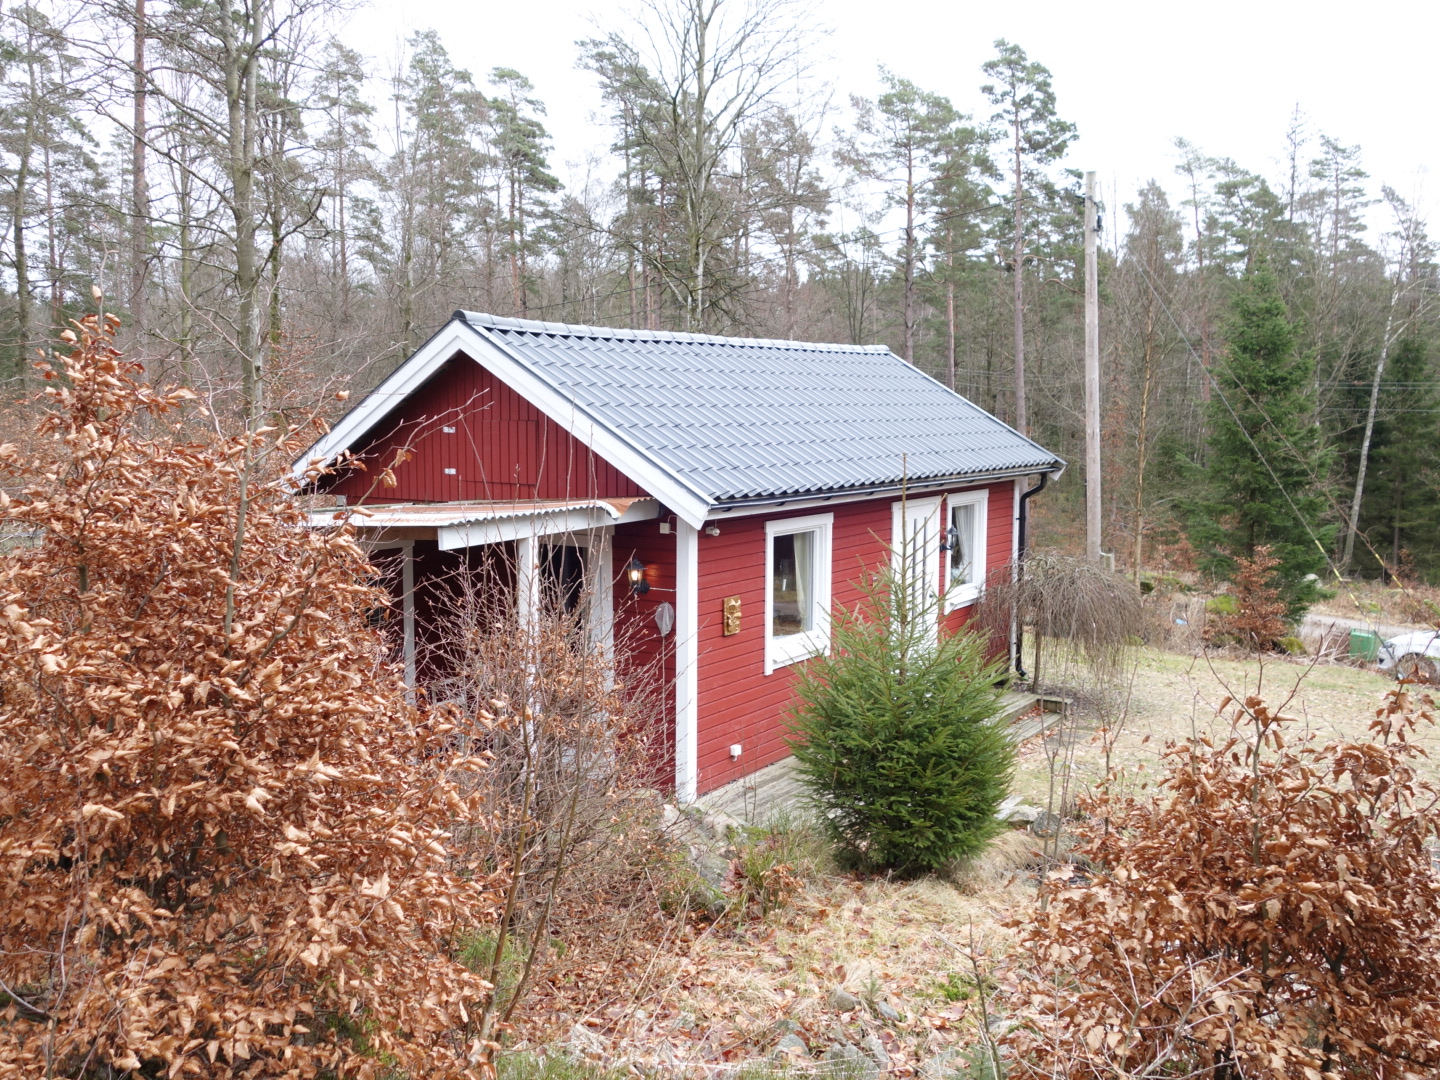 Galeriebild Ferien- oder Festwohnhaus in schöner Alleinlage im Wald zwischen Falkenberg und Torup, Provinz Halland